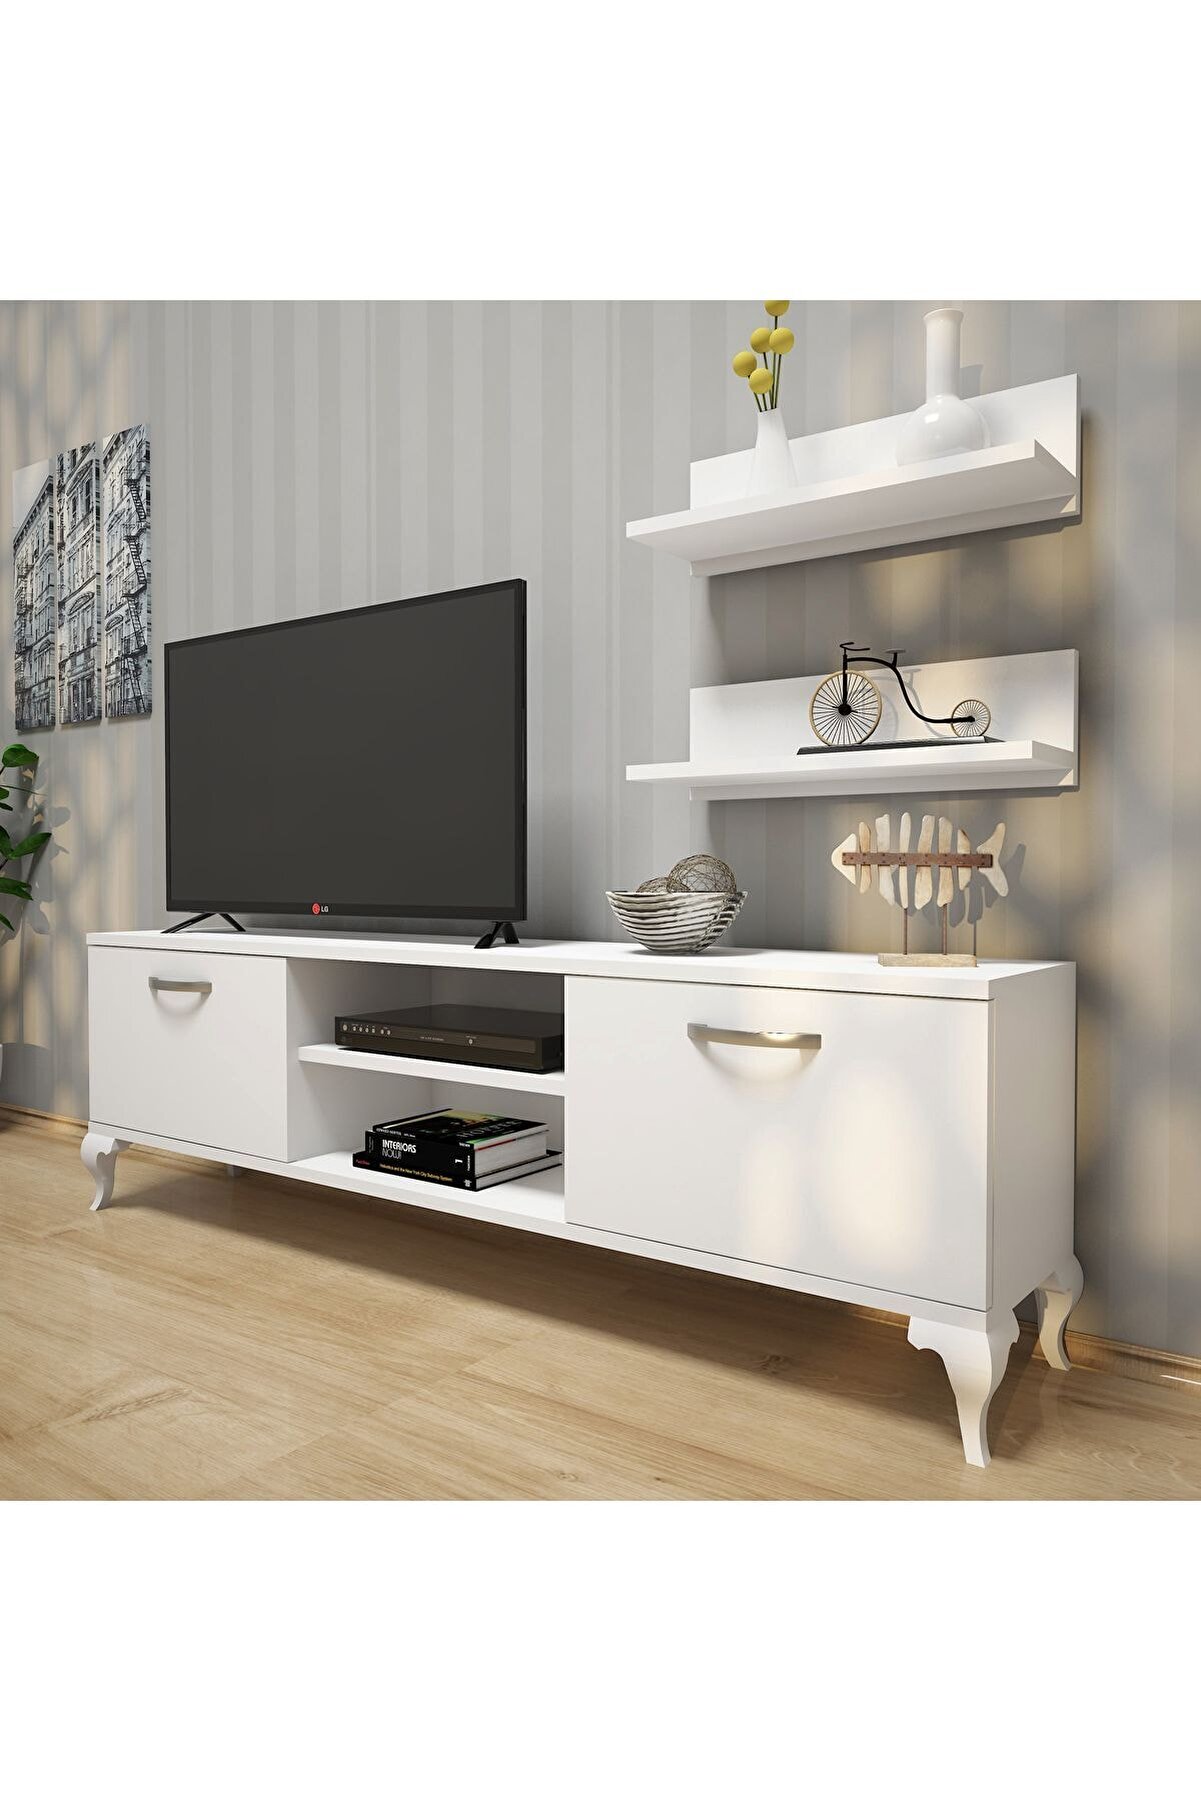 Rani Mobilya Rani A4 Duvar Raflı Tv Sehpası Kitaplıklı Tv Ünitesi Modern Ayaklı Tasarım 150 Cm Beyaz